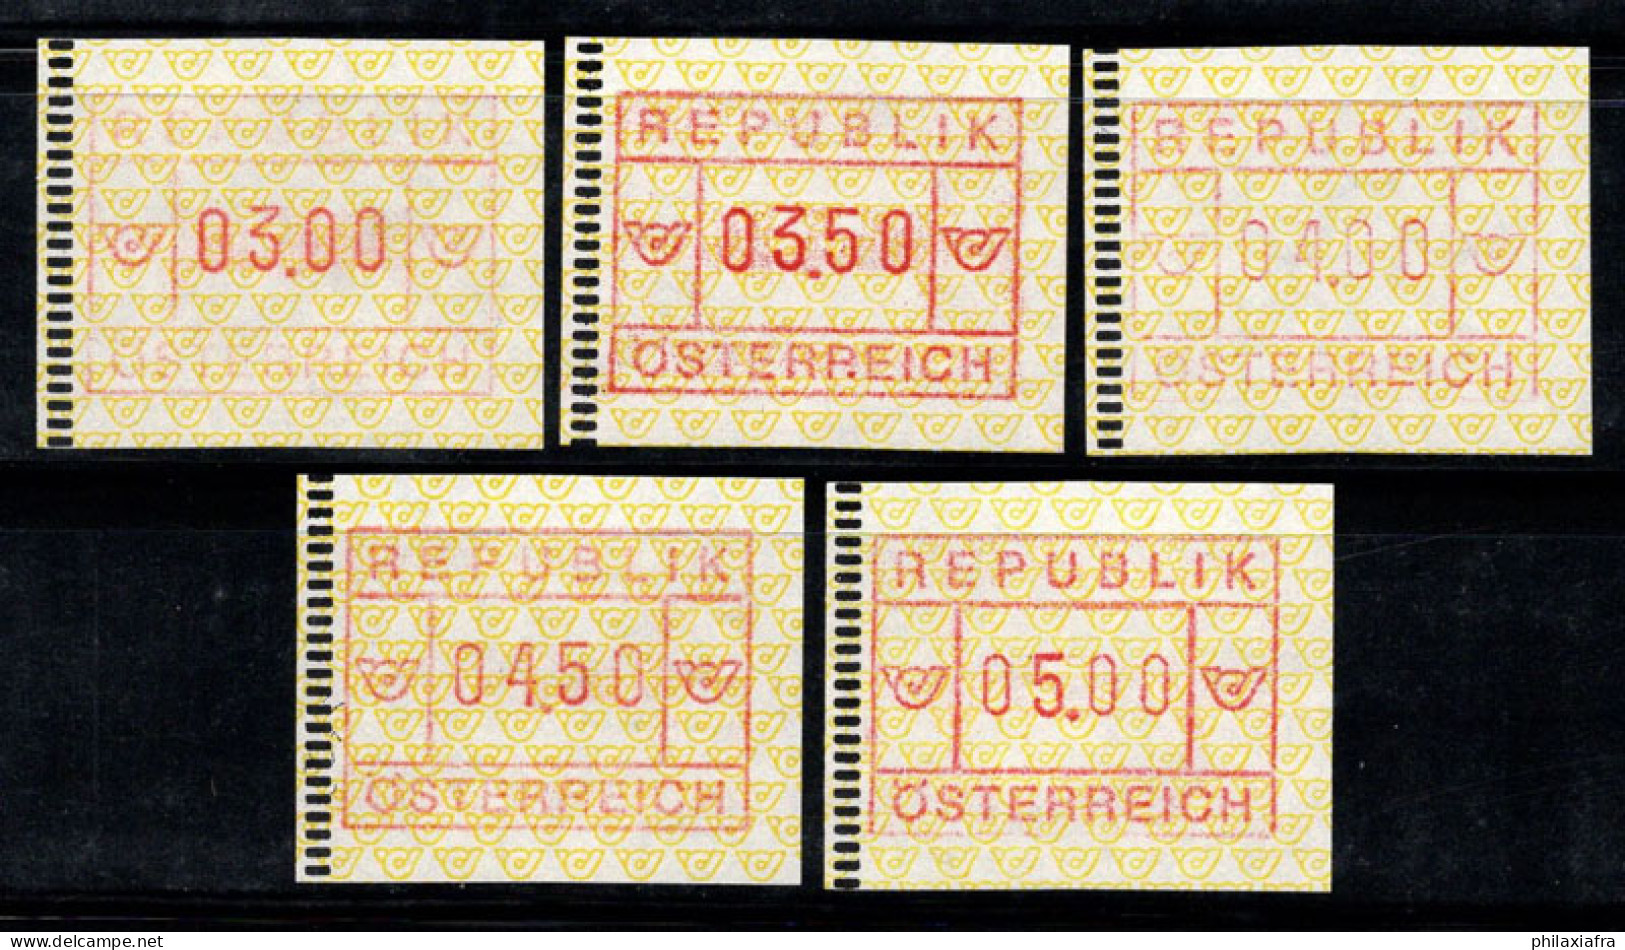 Autriche 1988 Mi. 2 Neuf ** 100% ATM 03.00-05.00 - Macchine Per Obliterare (EMA)